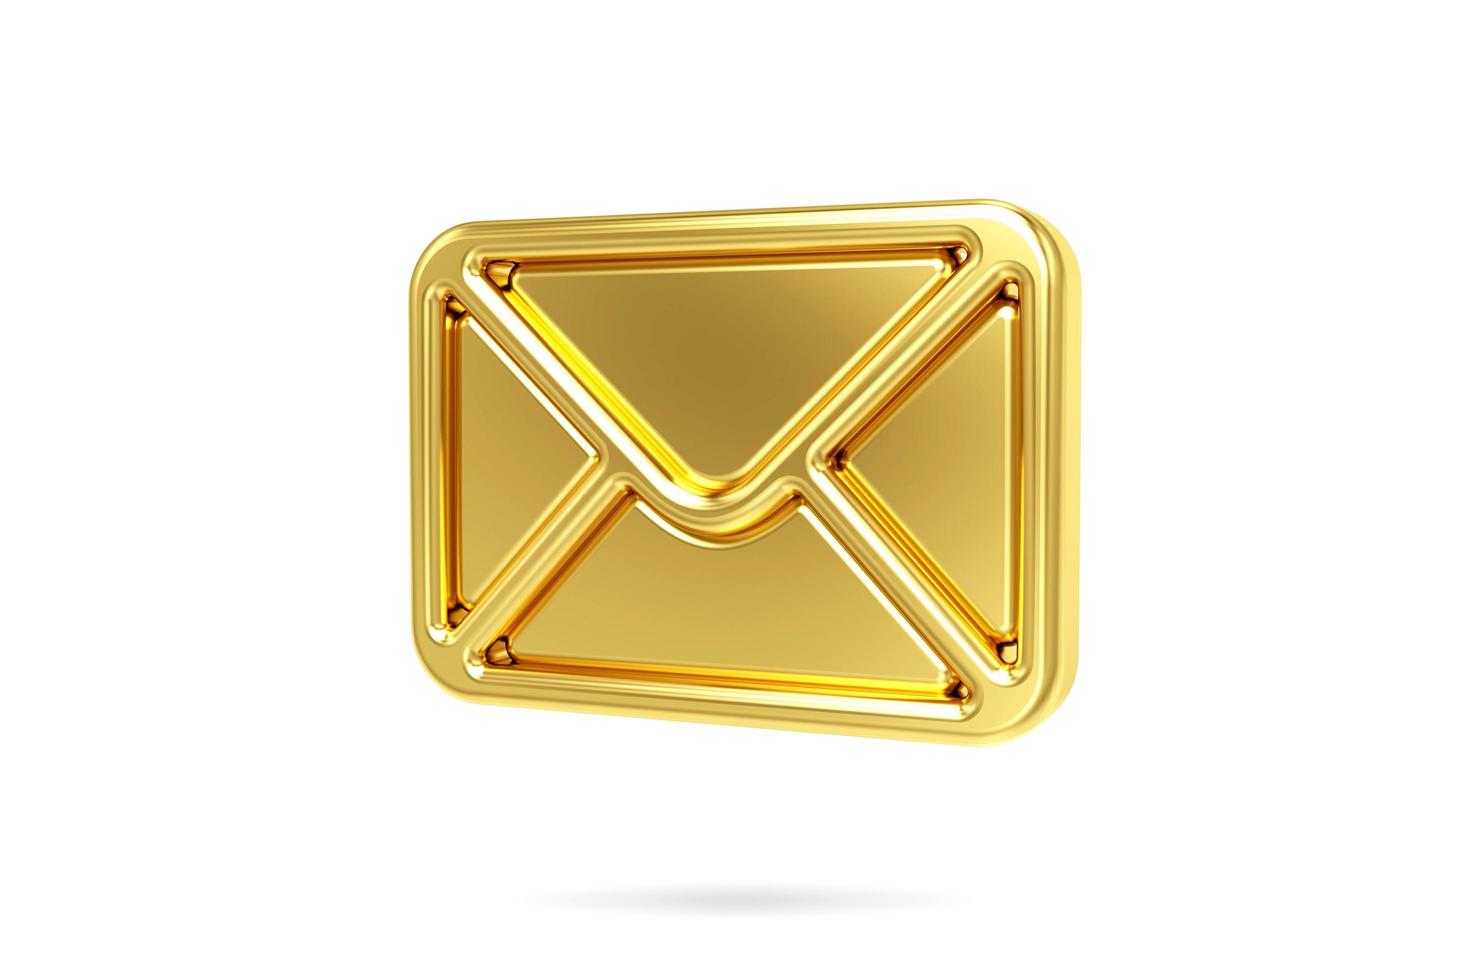 icône de courrier or 3d isolé sur fond blanc. signe d'enveloppe. icône de messagerie. icône de la lettre. rendu 3d photo